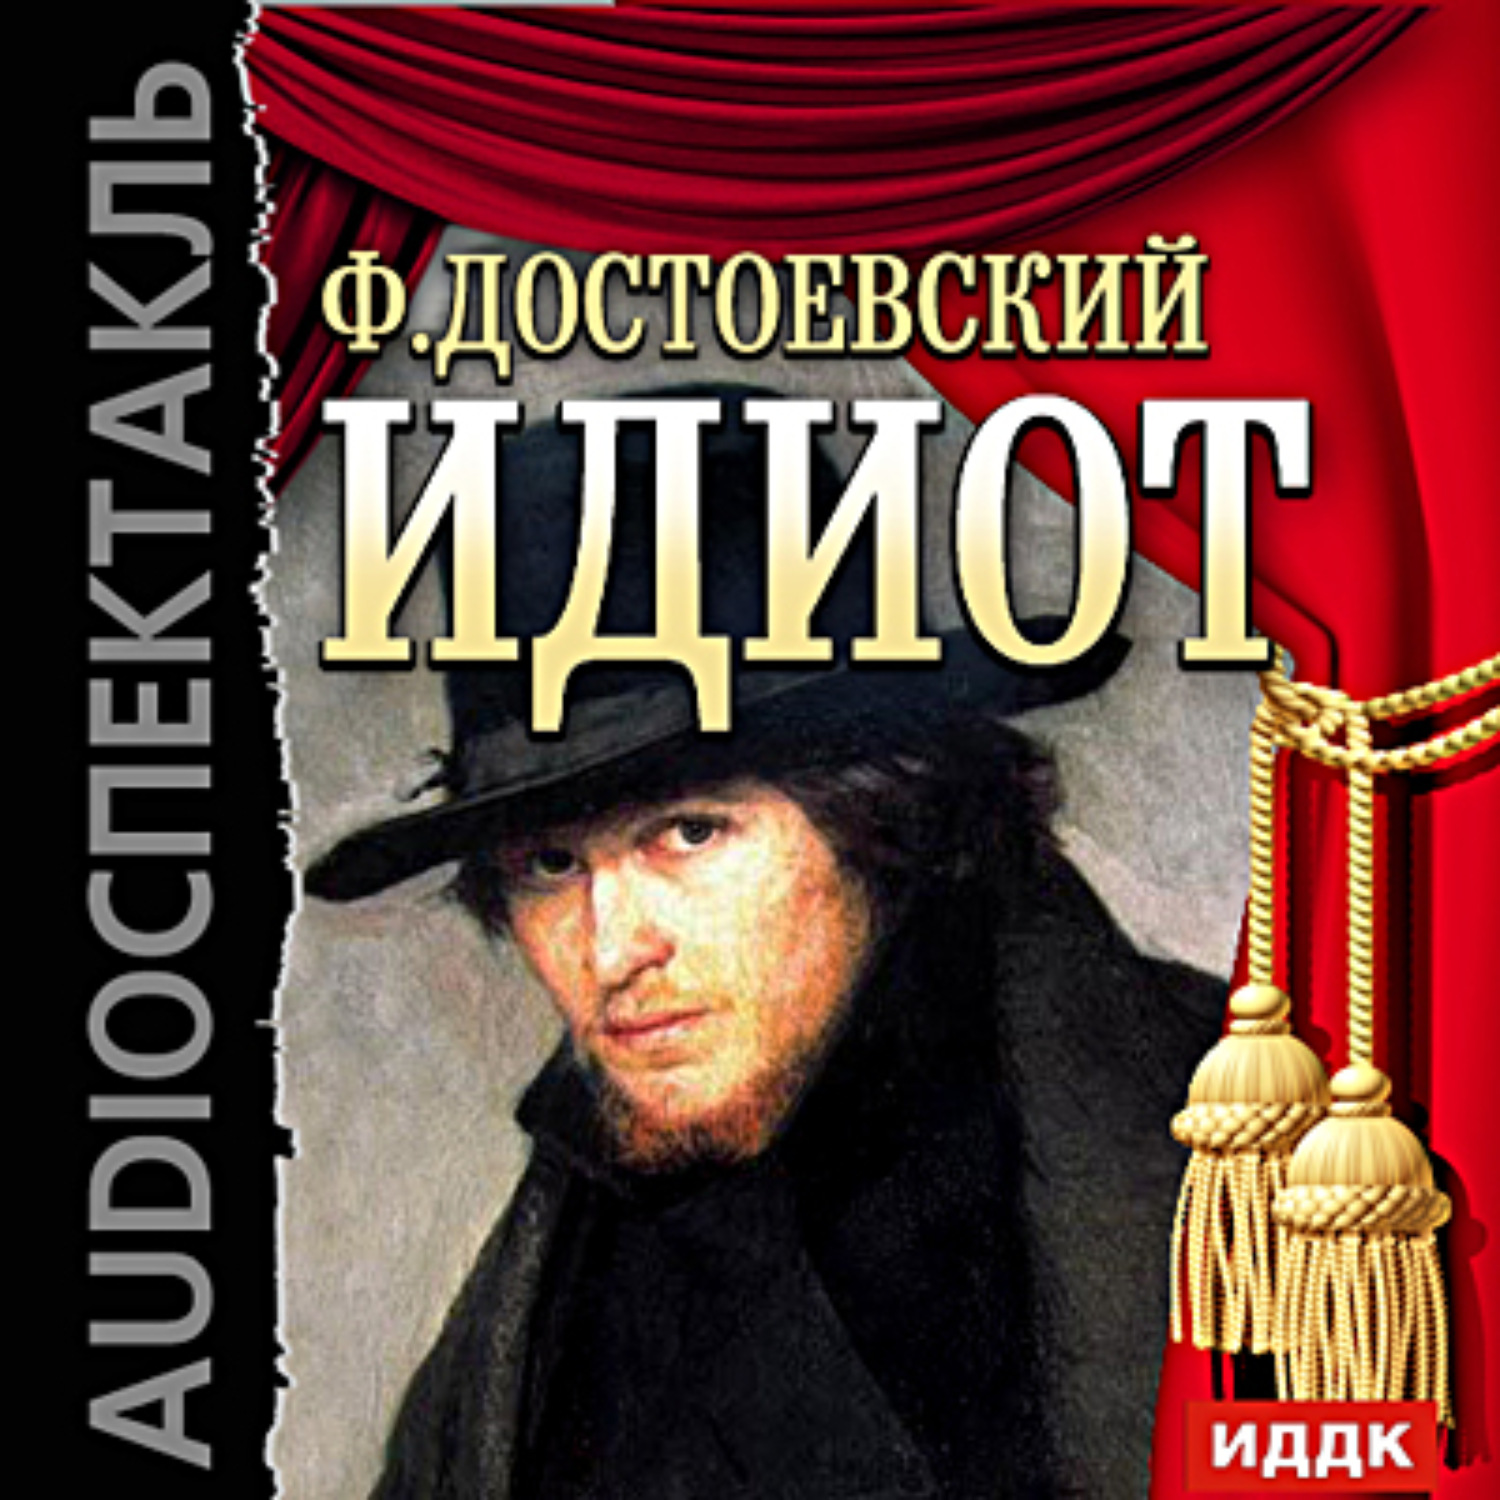 Федор Достоевский, Идиот (спектакль)– слушать онлайн бесплатно или ...
